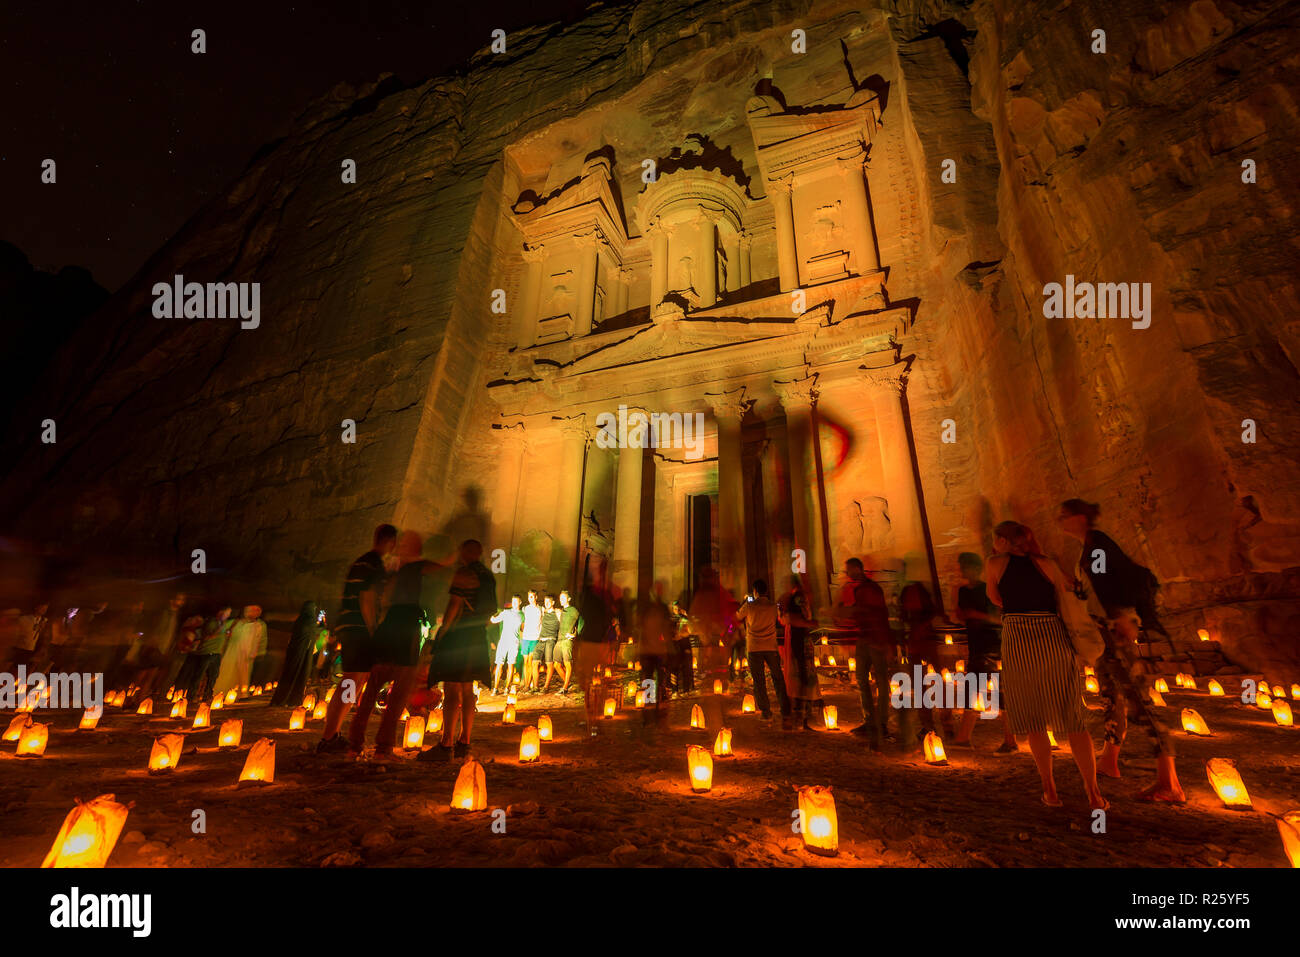 Candles in front of the Pharaoh's treasure house at night, illuminated facade of the treasure house Al-Khazneh, Khazne Faraun, Stock Photo